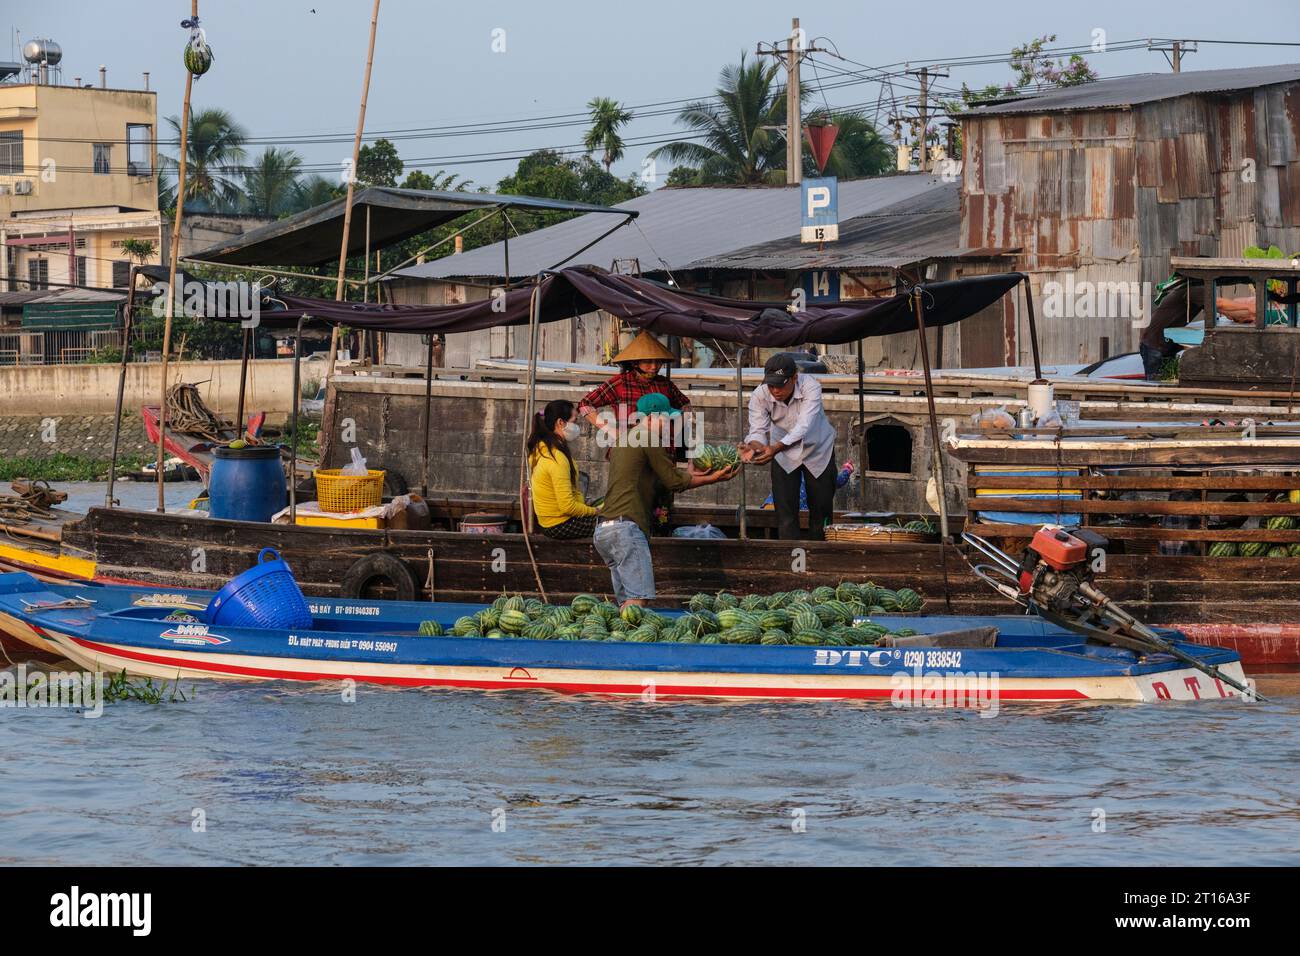 Scène du marché flottant de Phong Dien, près de CAN Tho, Vietnam. Transfert de pastèques. Banque D'Images